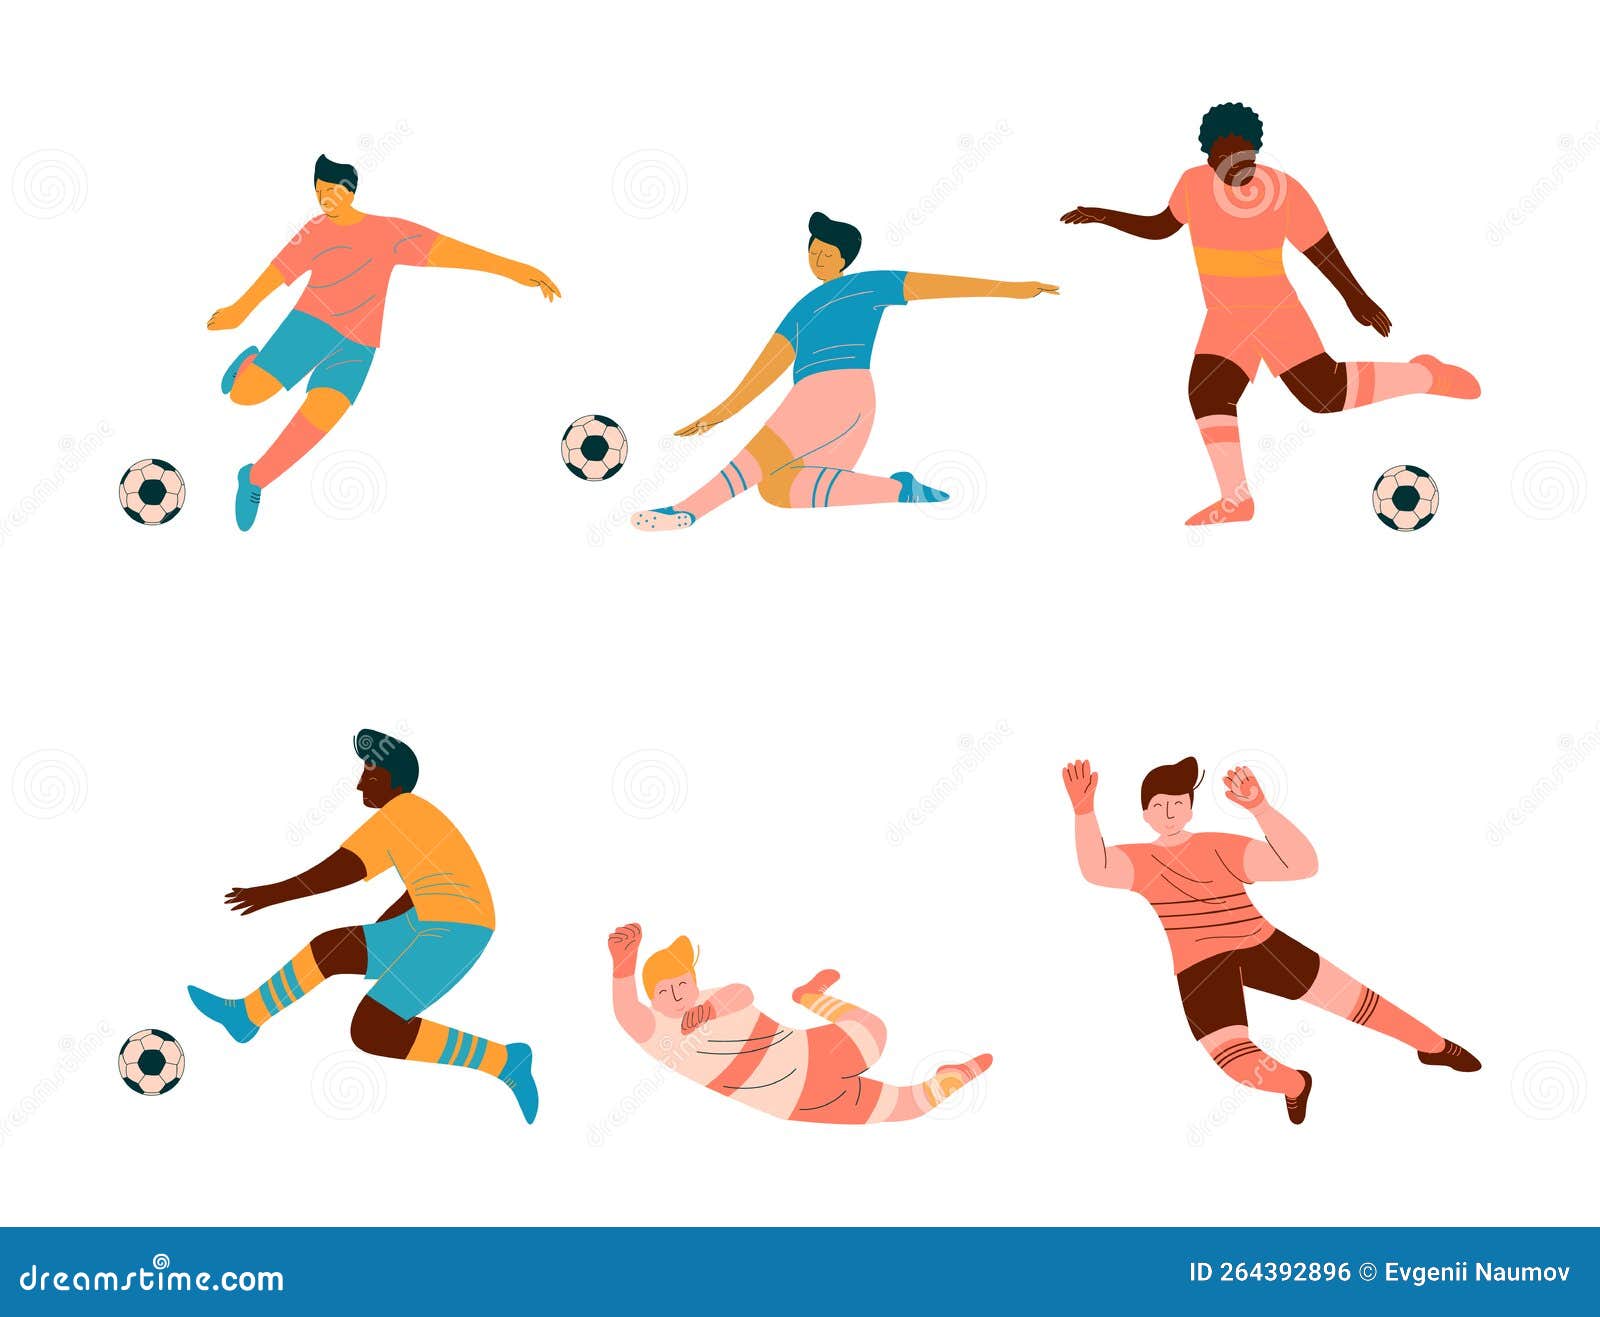 Página 2  Vetores e ilustrações de Jogo futebol infantil para